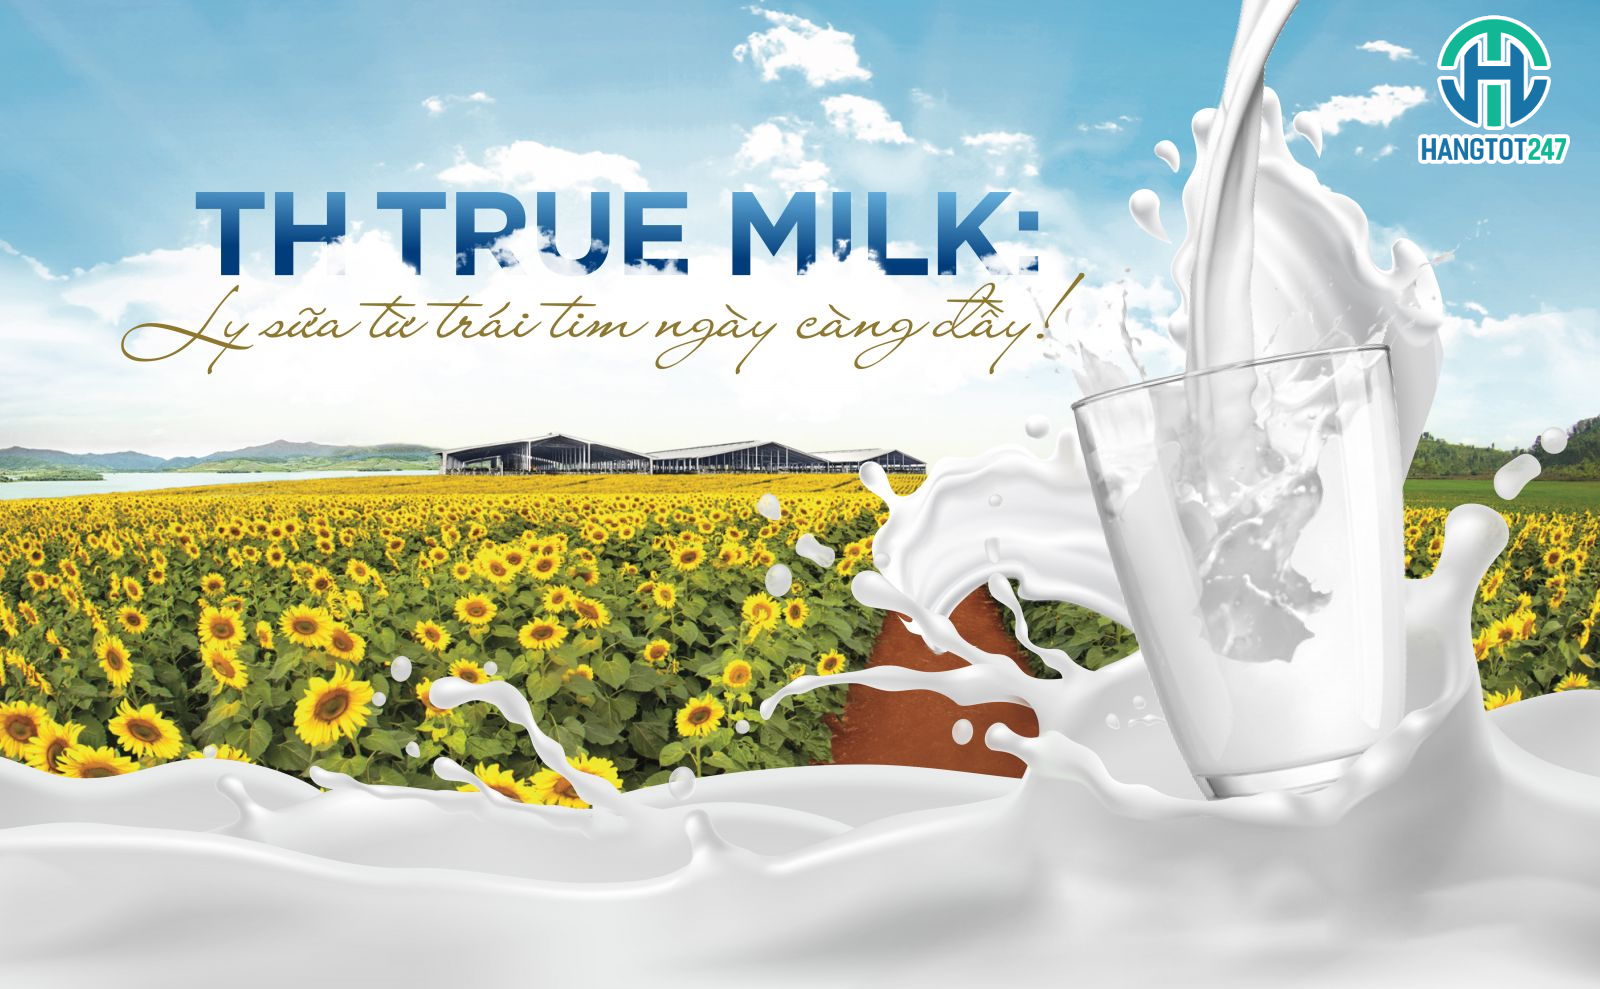 Sữa TH true Milk - Nguồn dinh dưỡng tuyệt vời cho gia đình bạn